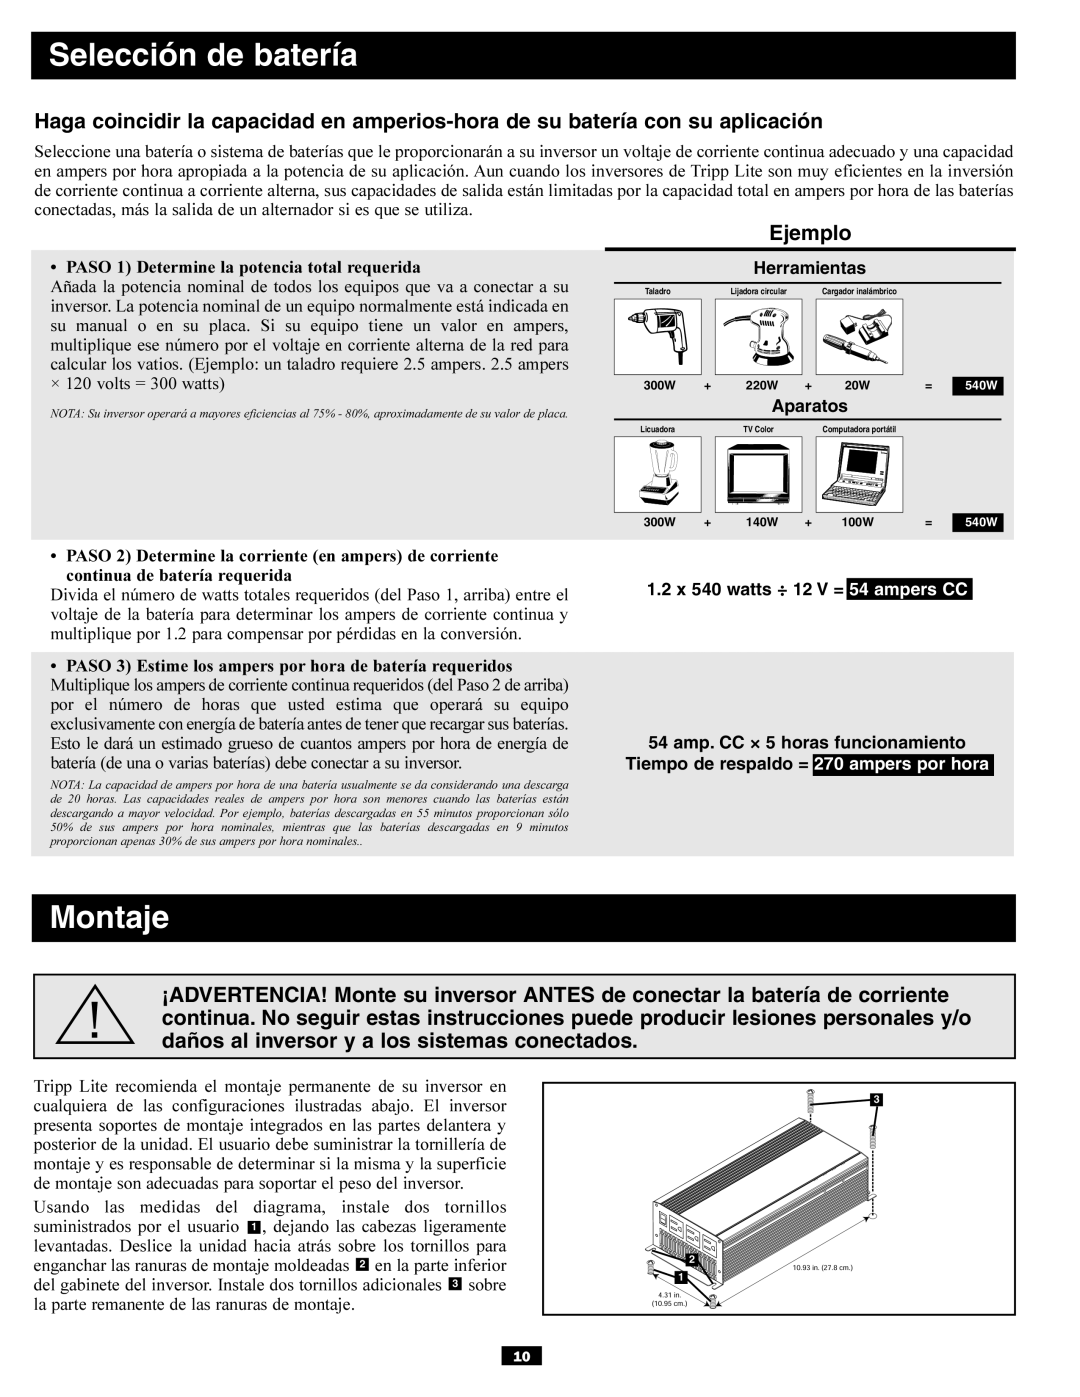 Tripp Lite PV700HF owner manual Selección de batería, Montaje 